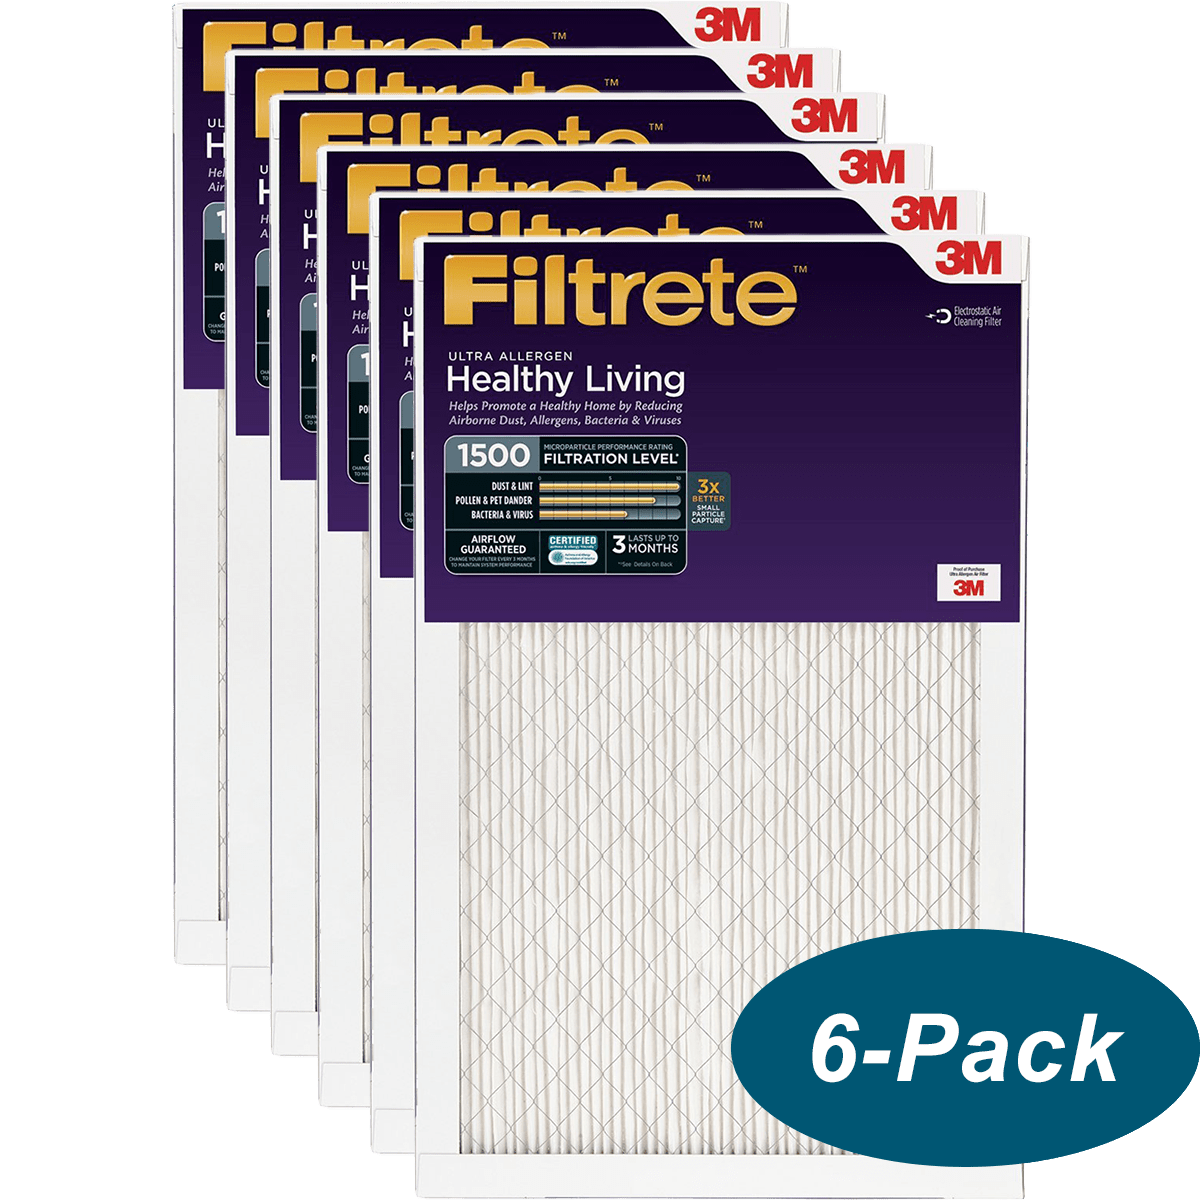 3M Filtrete 1500 Ultra Allergen HVAC Air and Furnace Filters 6-PACK 14x30x1 